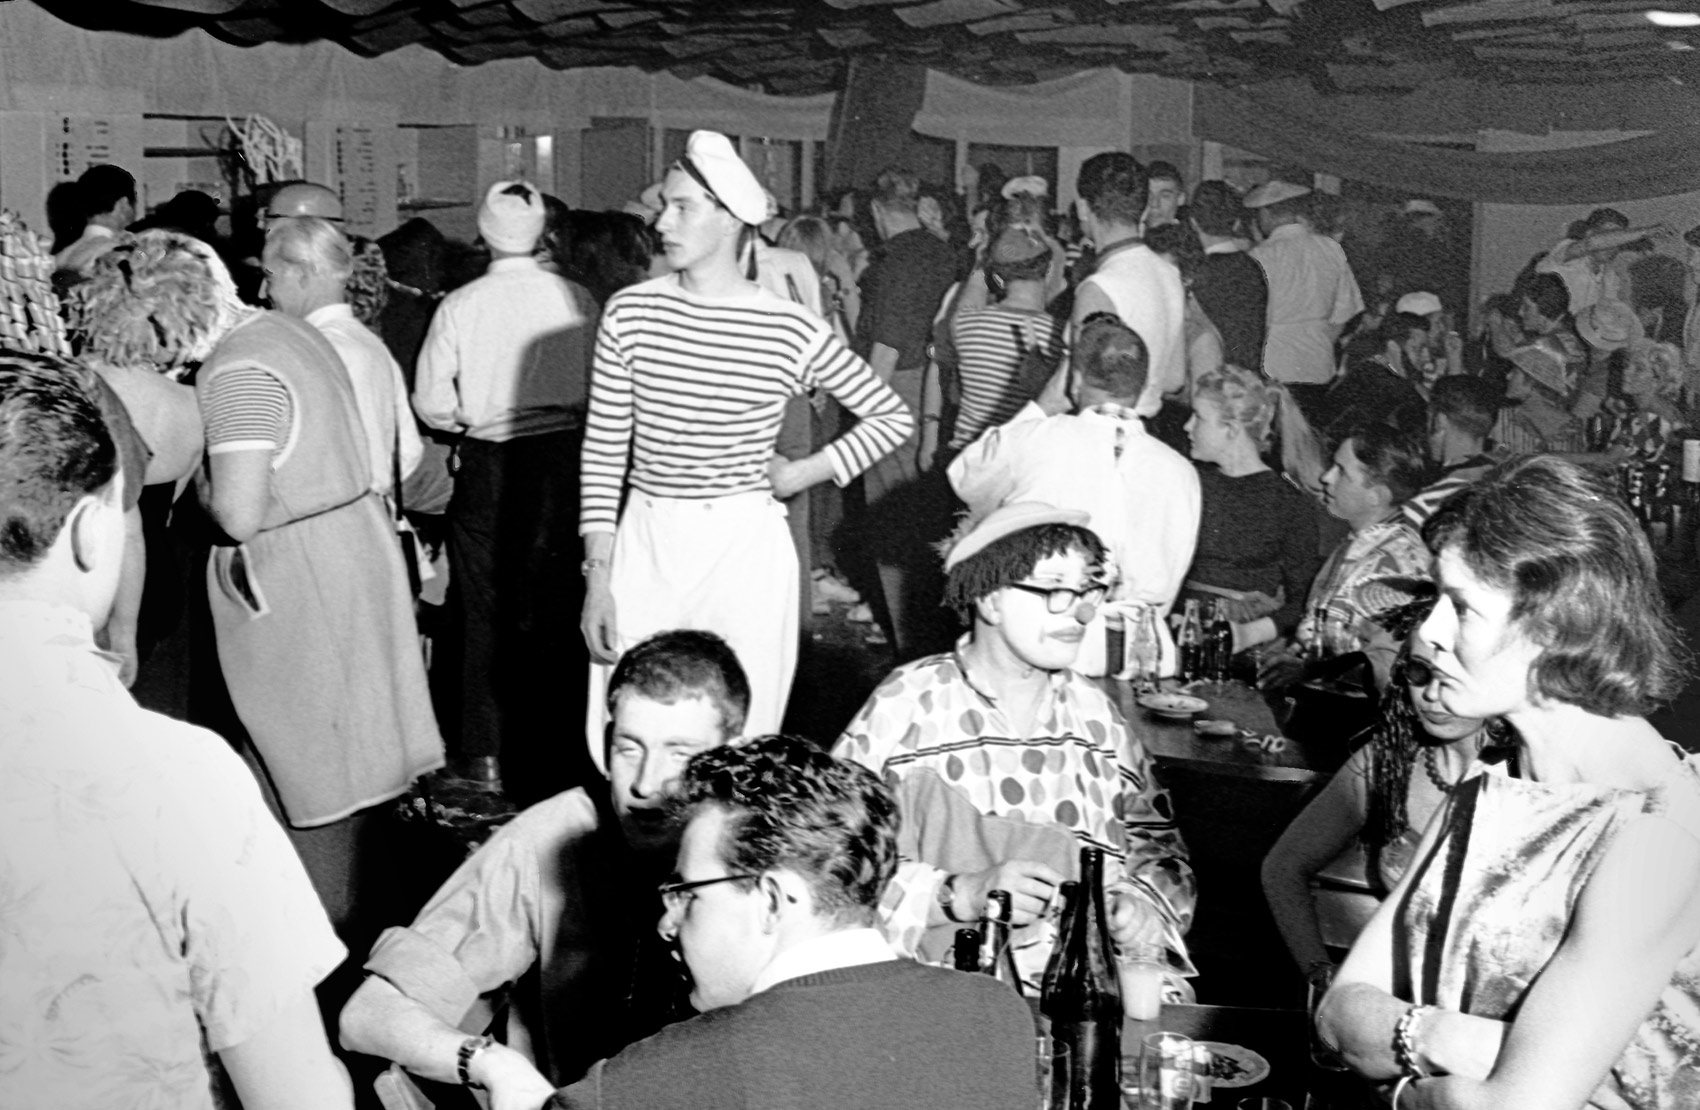 Carnival at the HfG, 1959